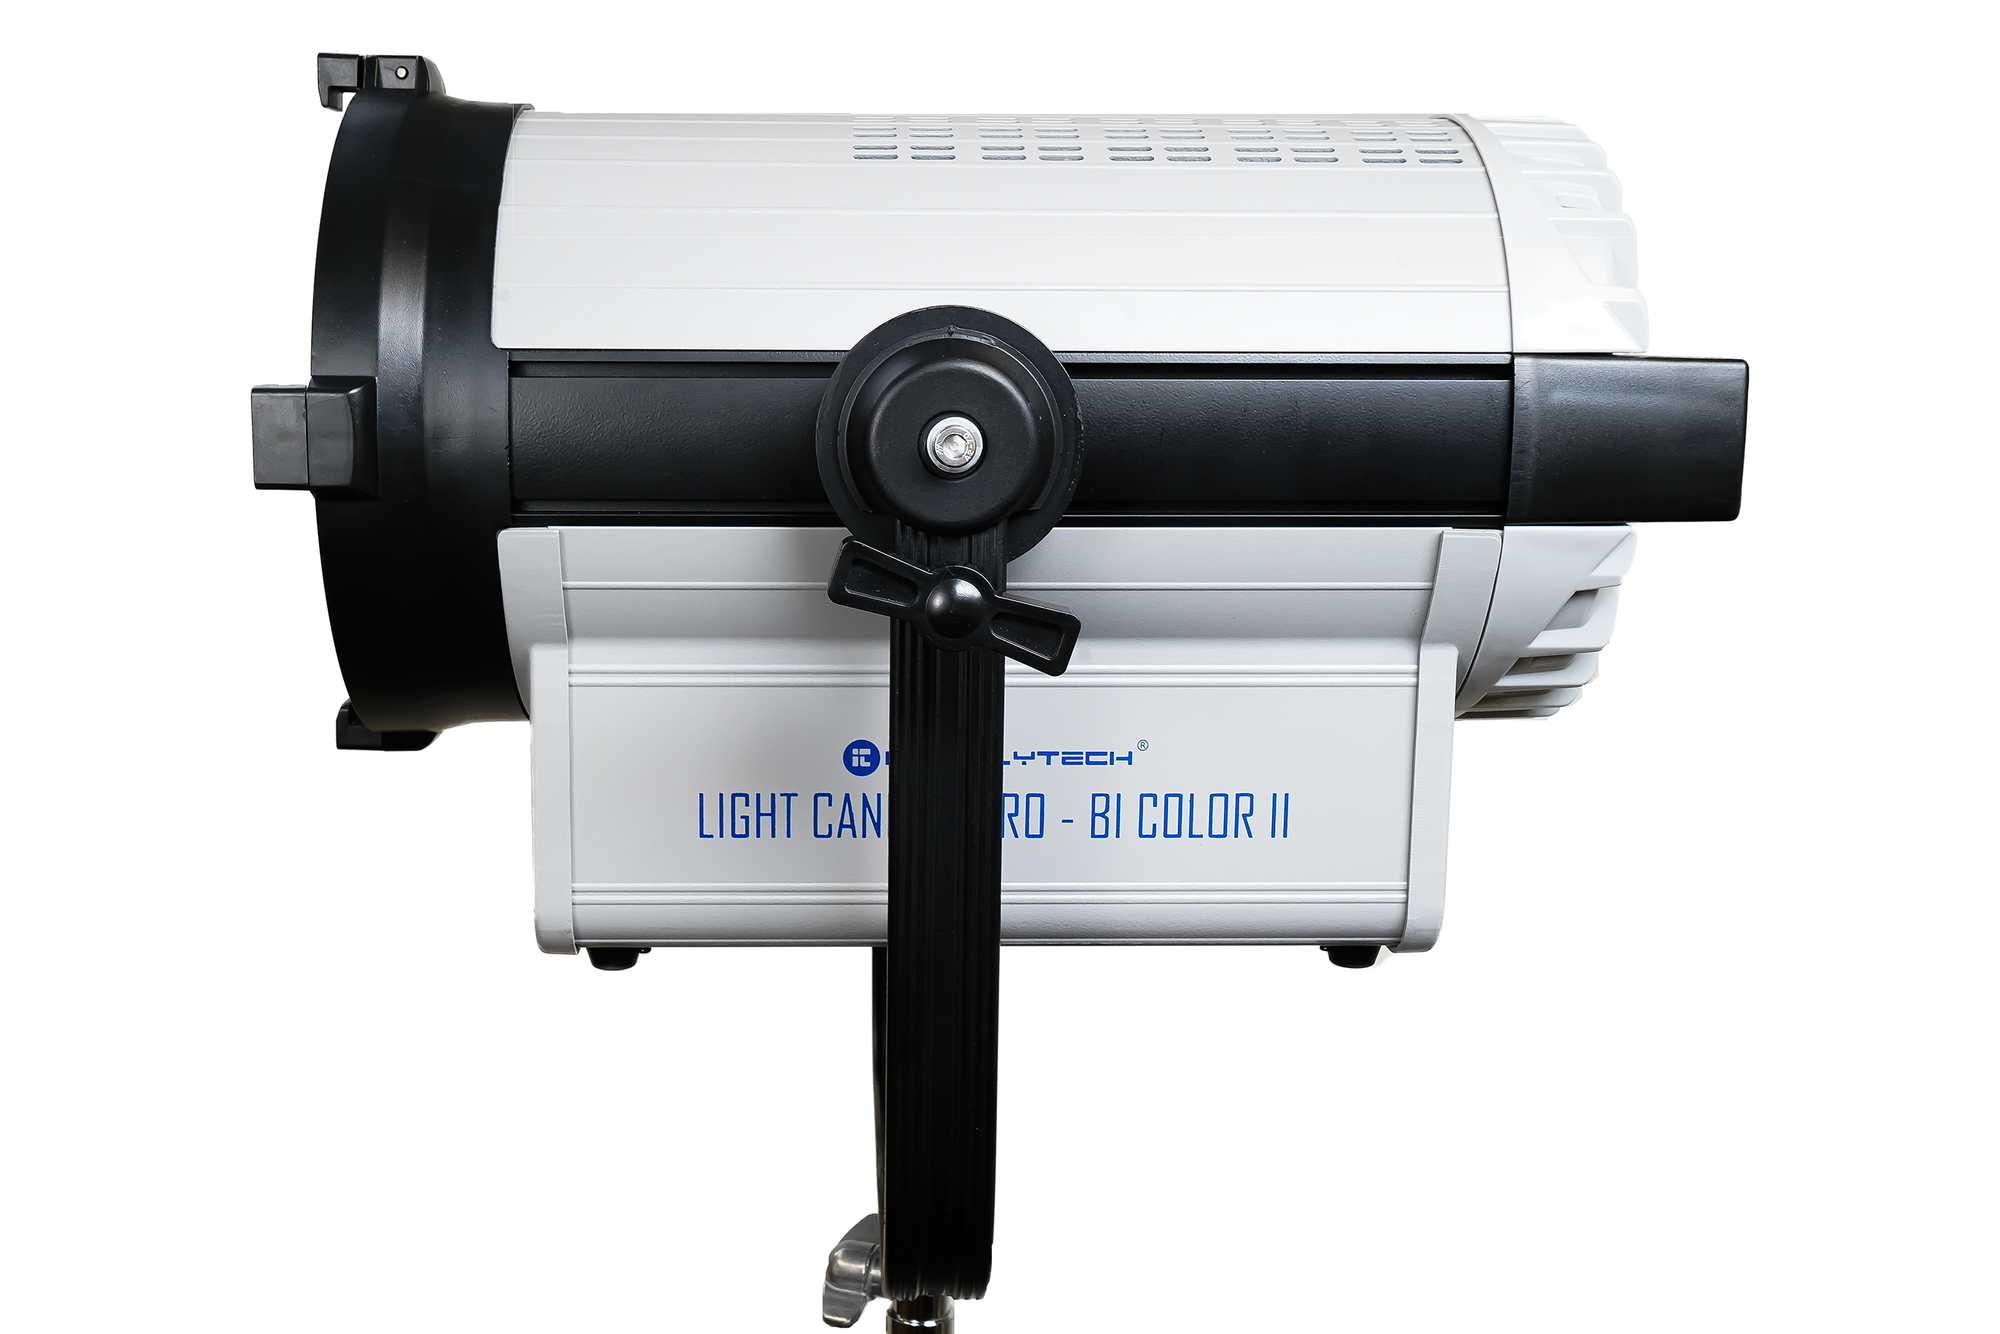 Light Cannon Pro Bi Color II